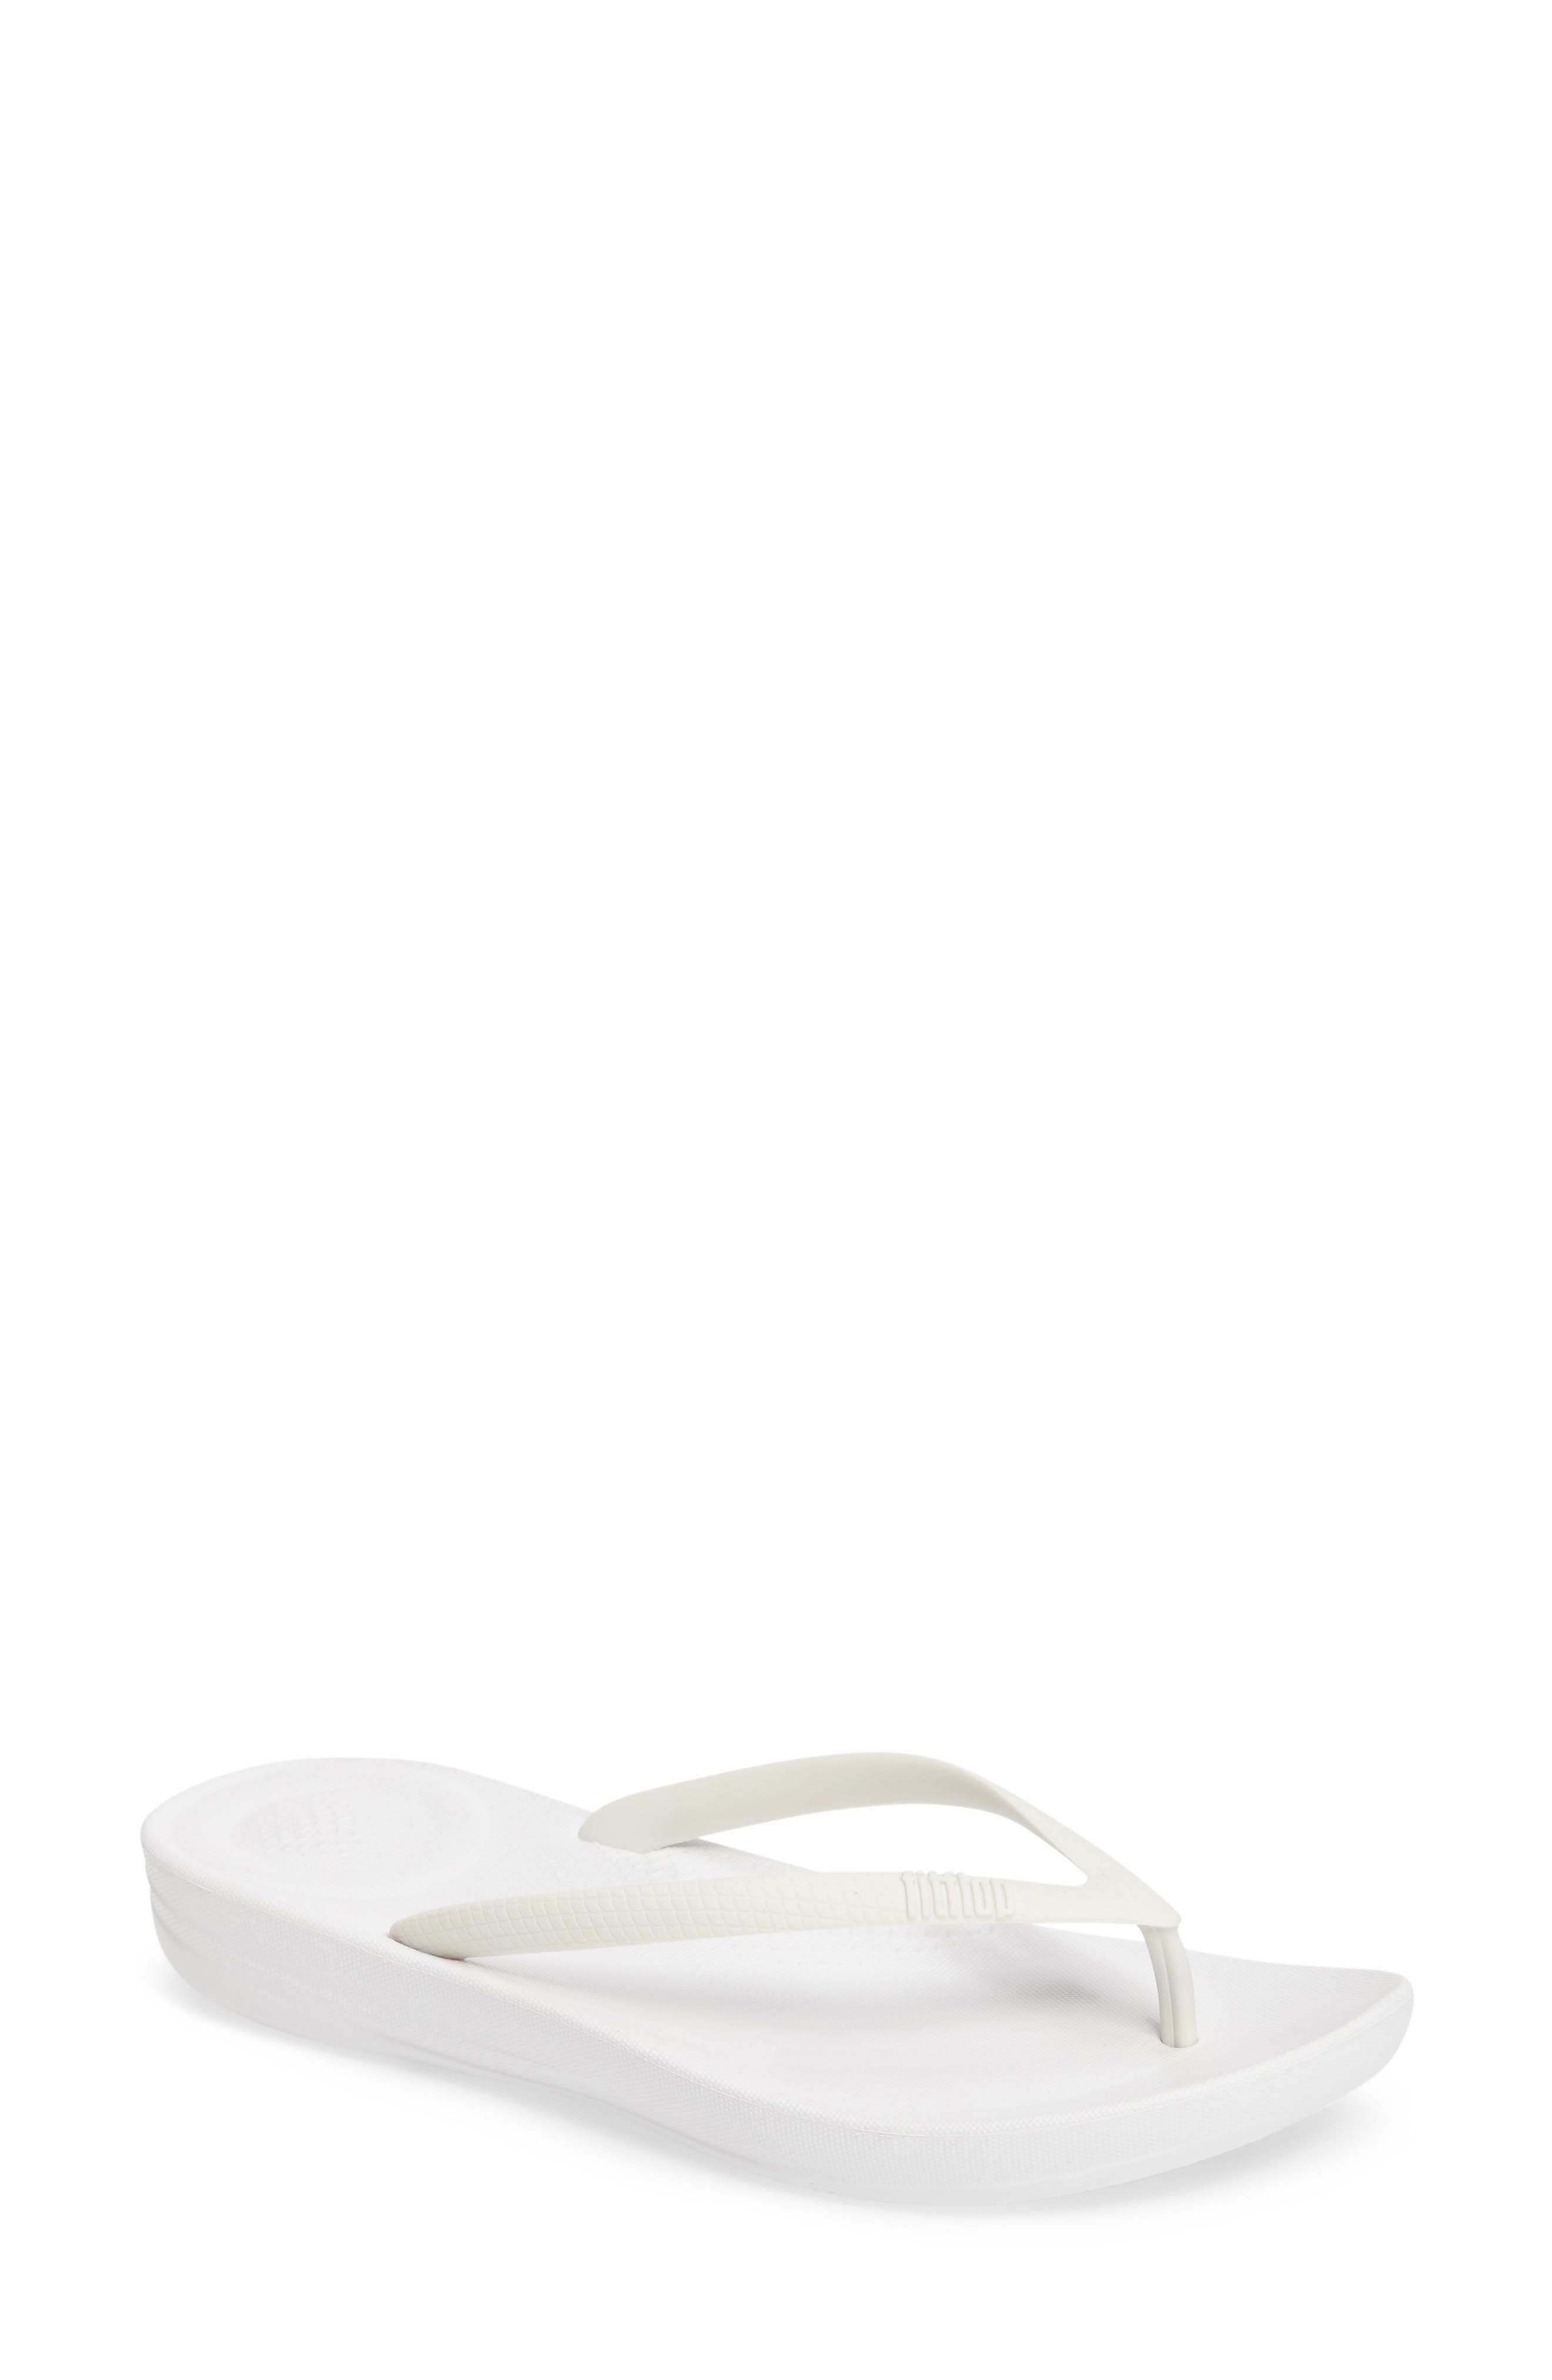 white comfort heels